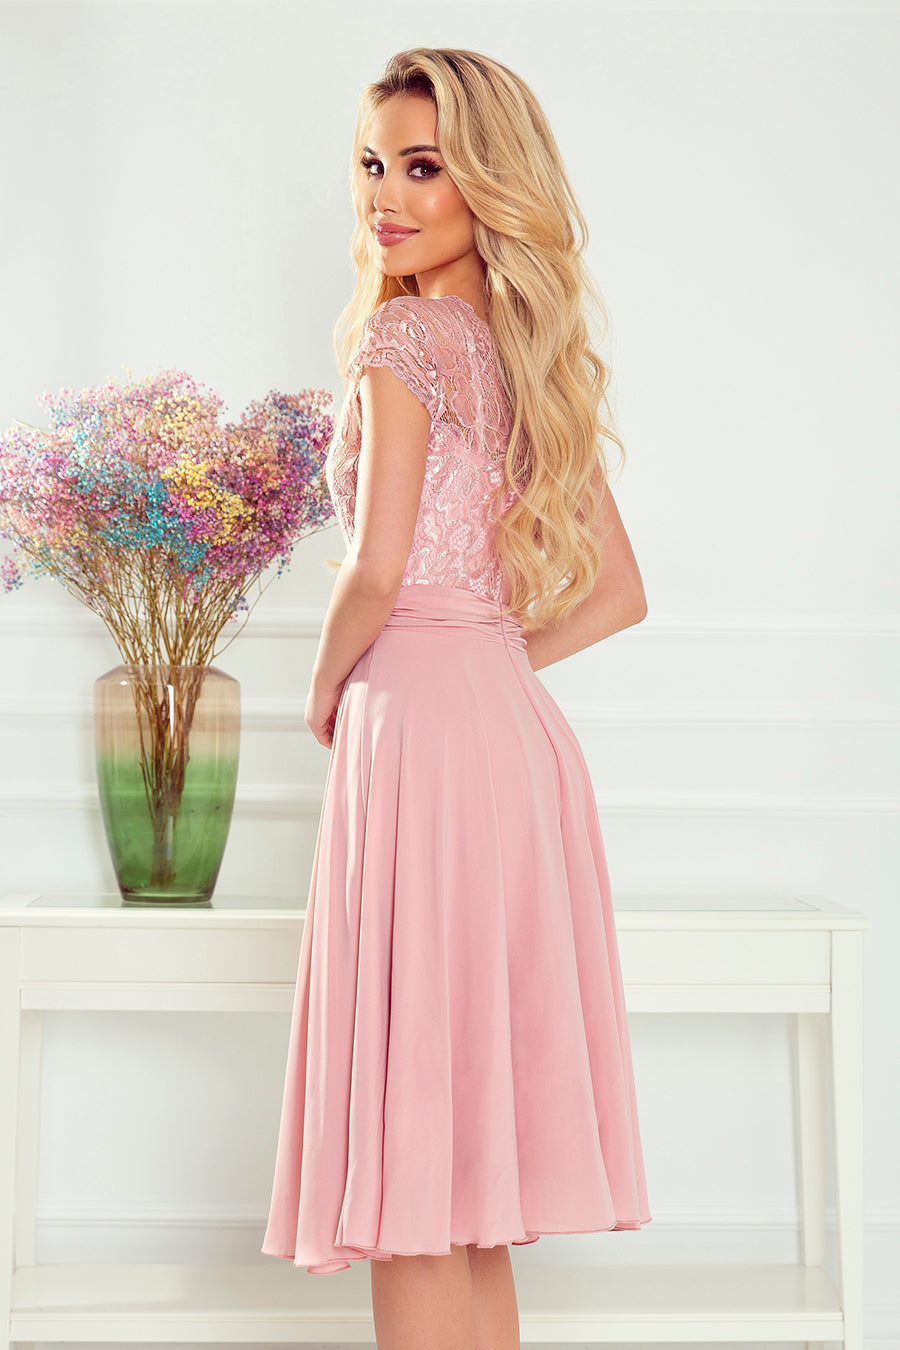 Γυναικείο φόρεμα Esmeray, Ροζ 6